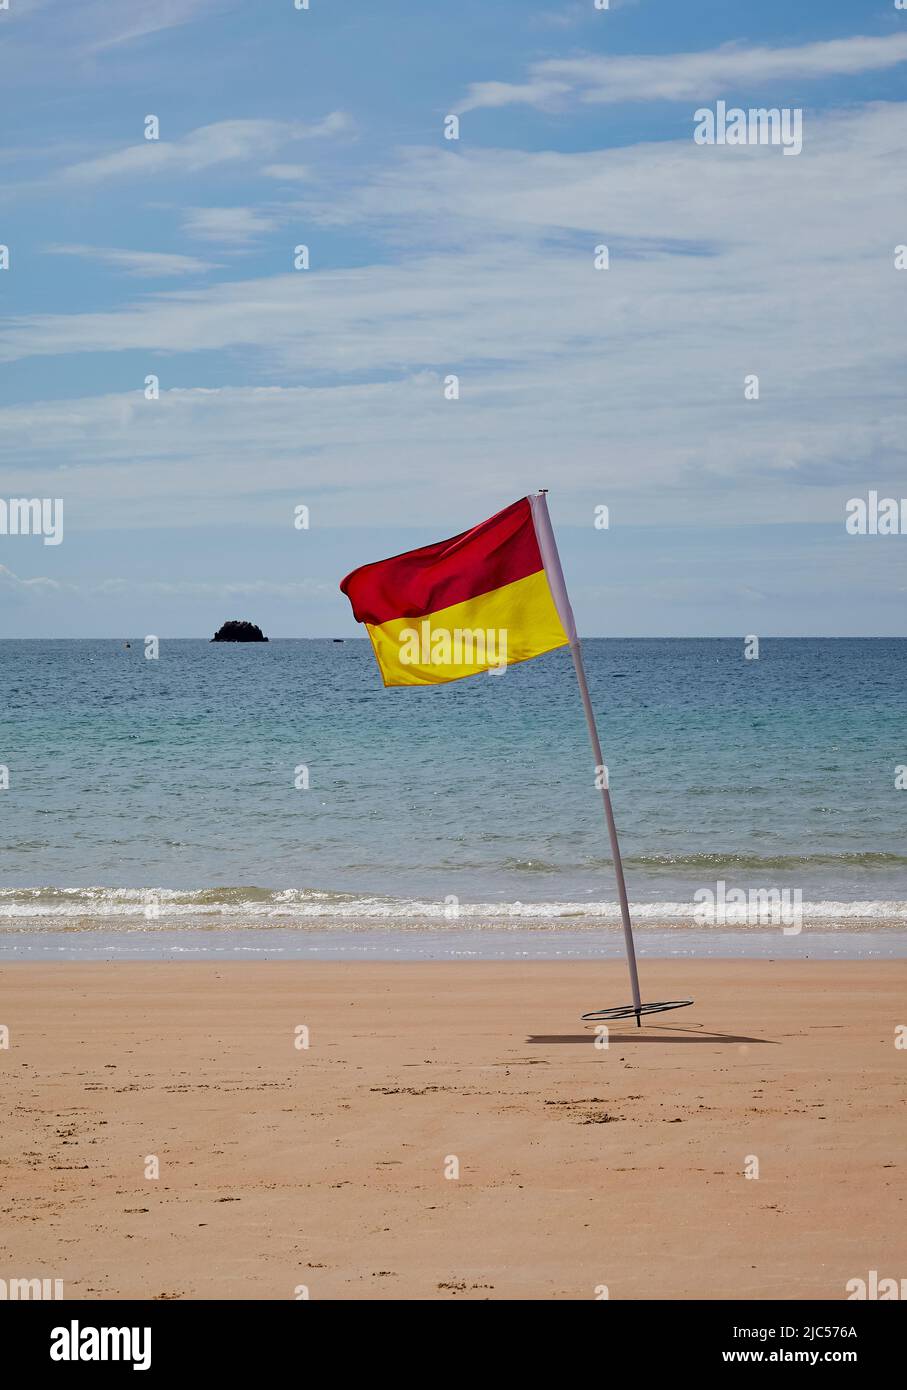 Rote Warnflagge am Strand - Lizenzfreies Bild #2316353